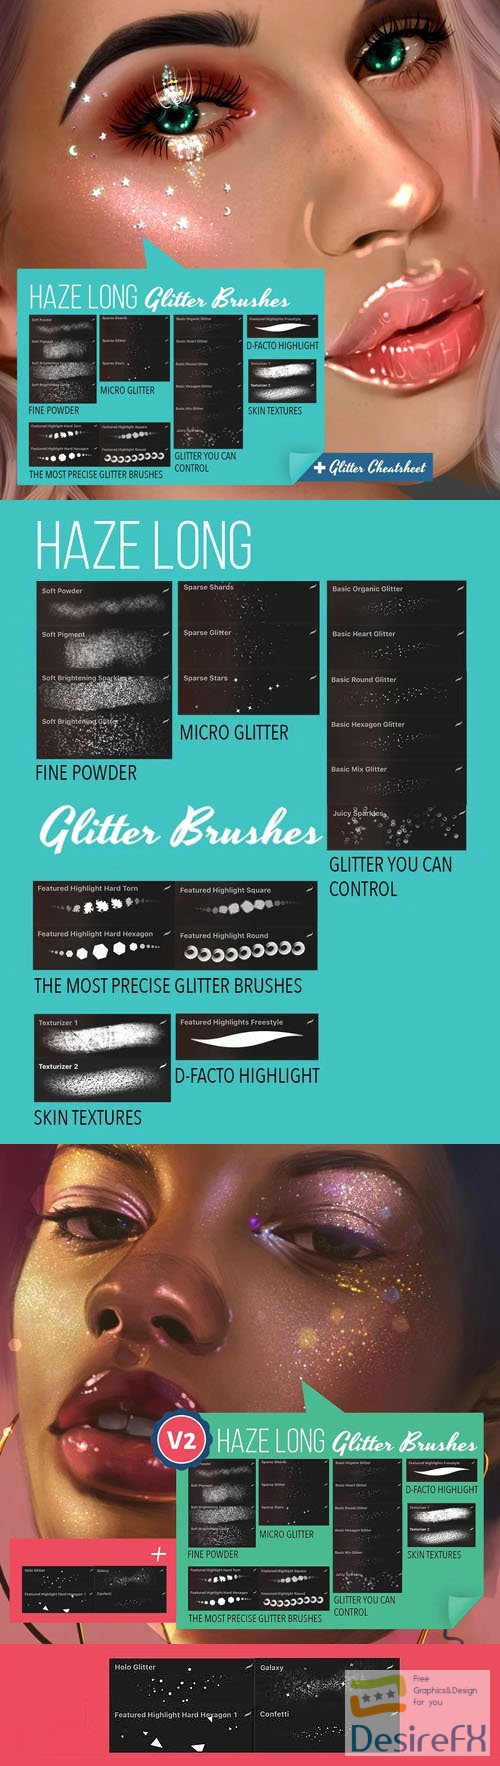 24 Haze Long Glitter Brushes for Procreate